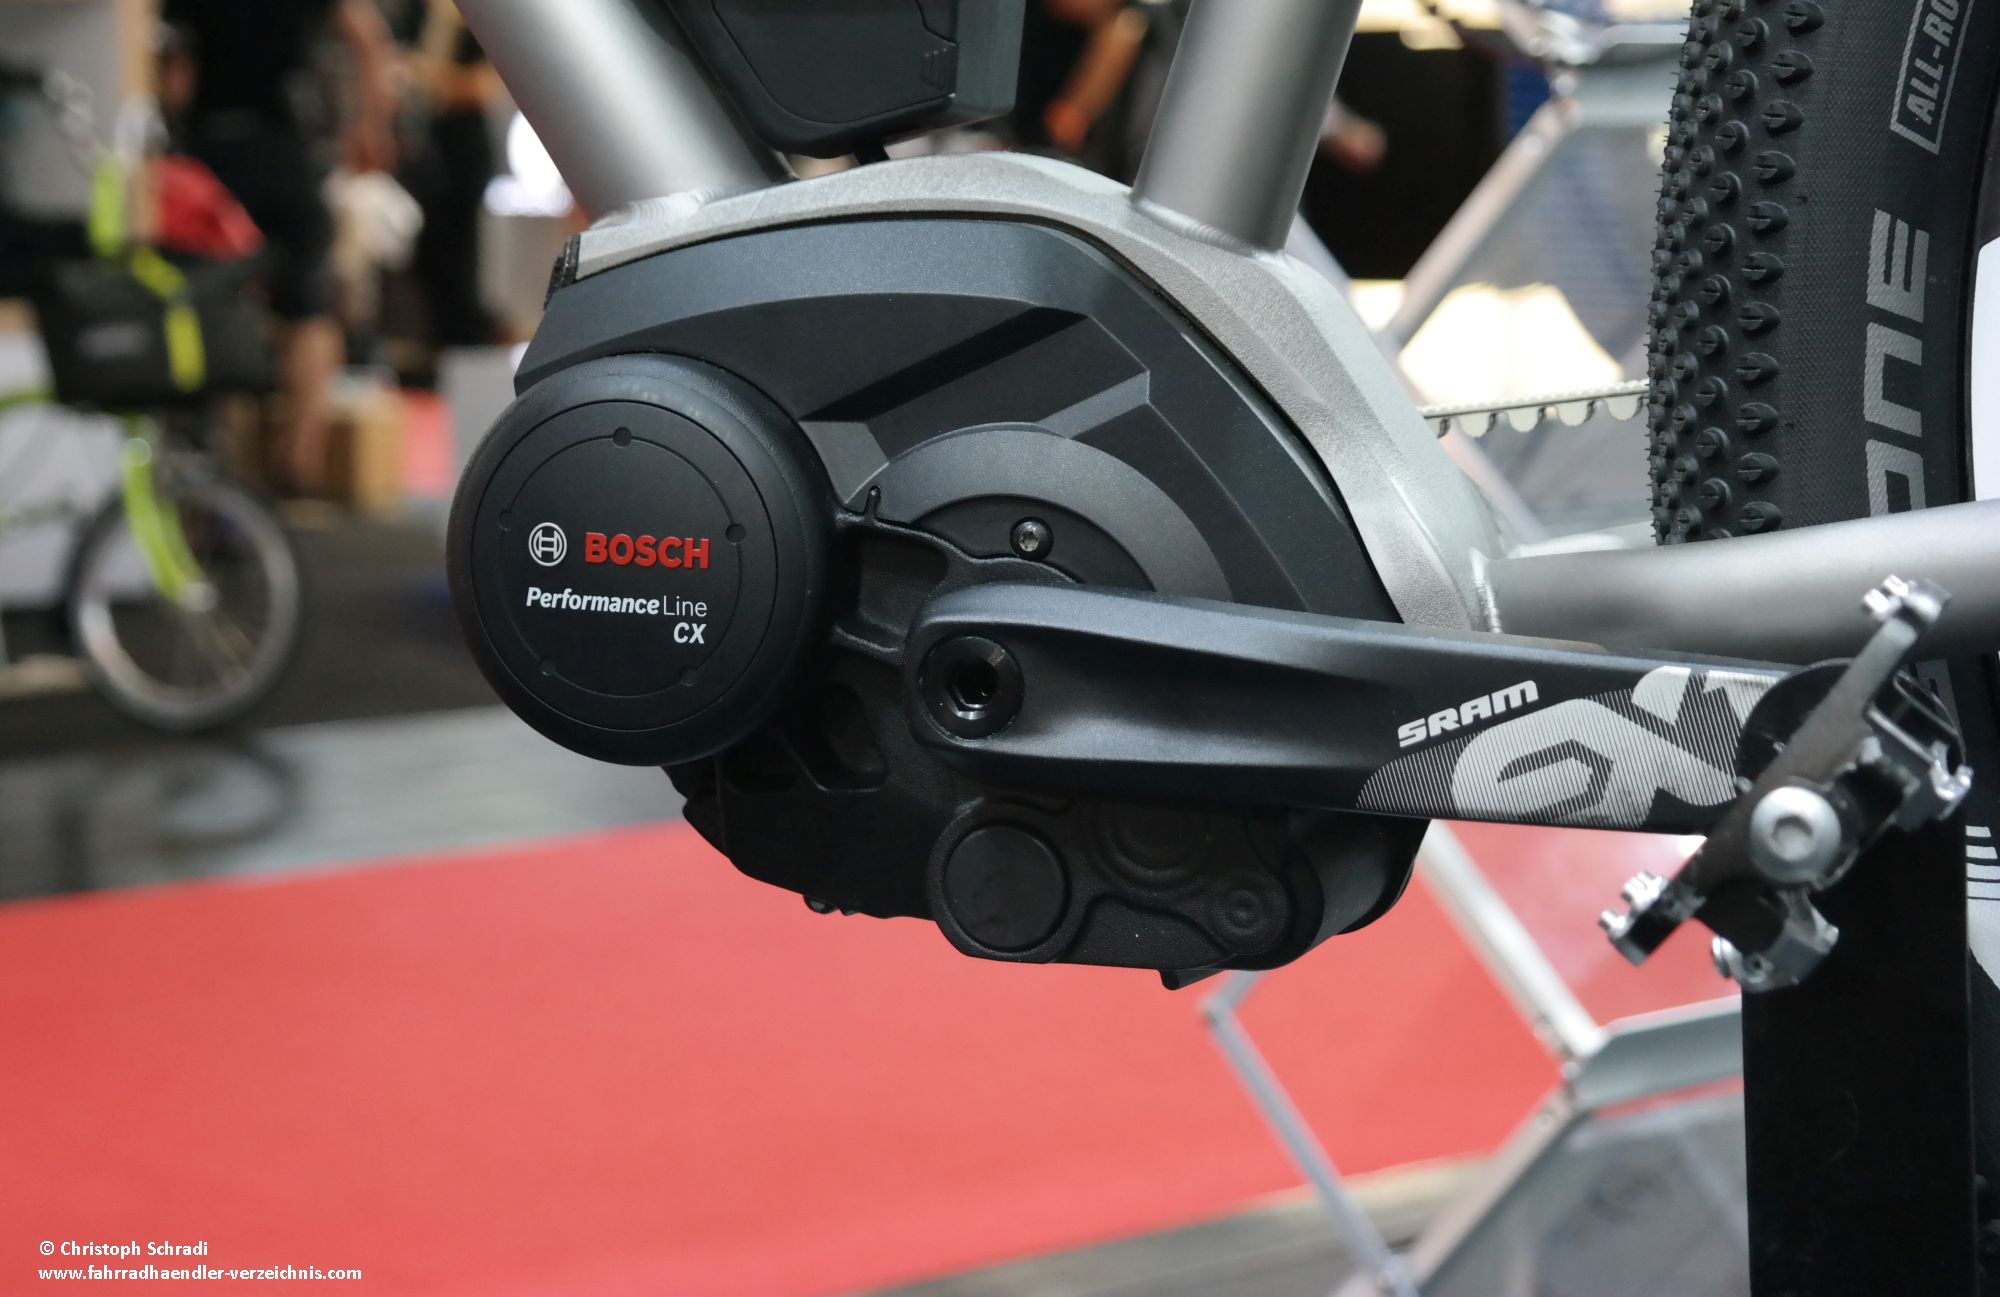 Die Bosch Performance Line CX ist auch 2019 der Benchmark in Sachen Untersützungsleistung bei den Bosch Motoren am E-Bike